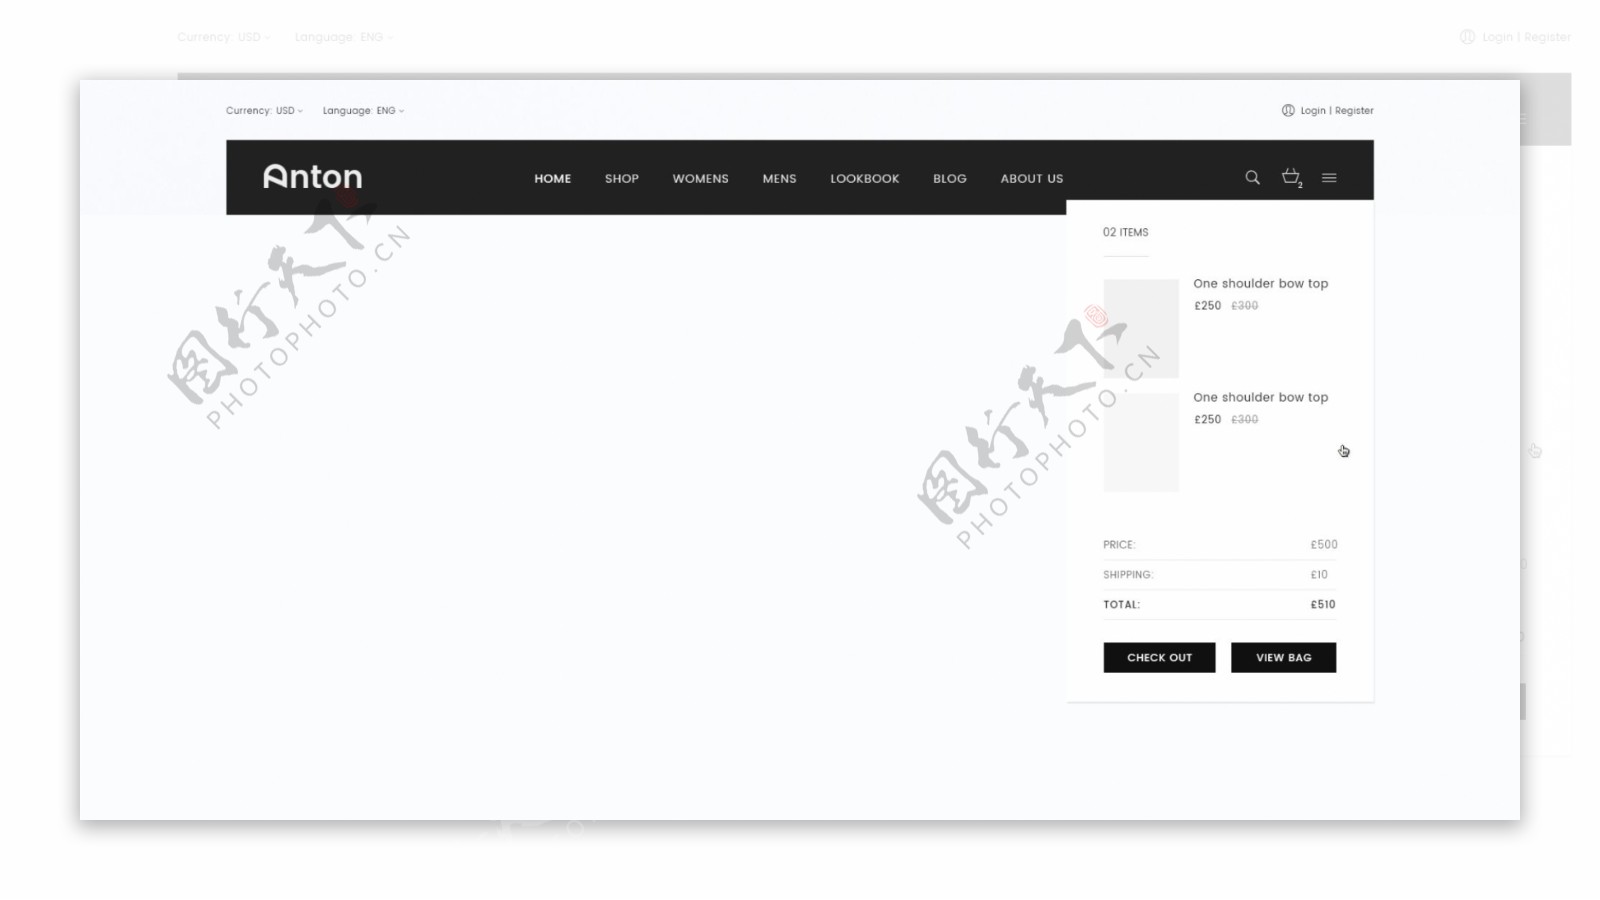 UI网页悬浮菜单黑白灰简约PSD模板